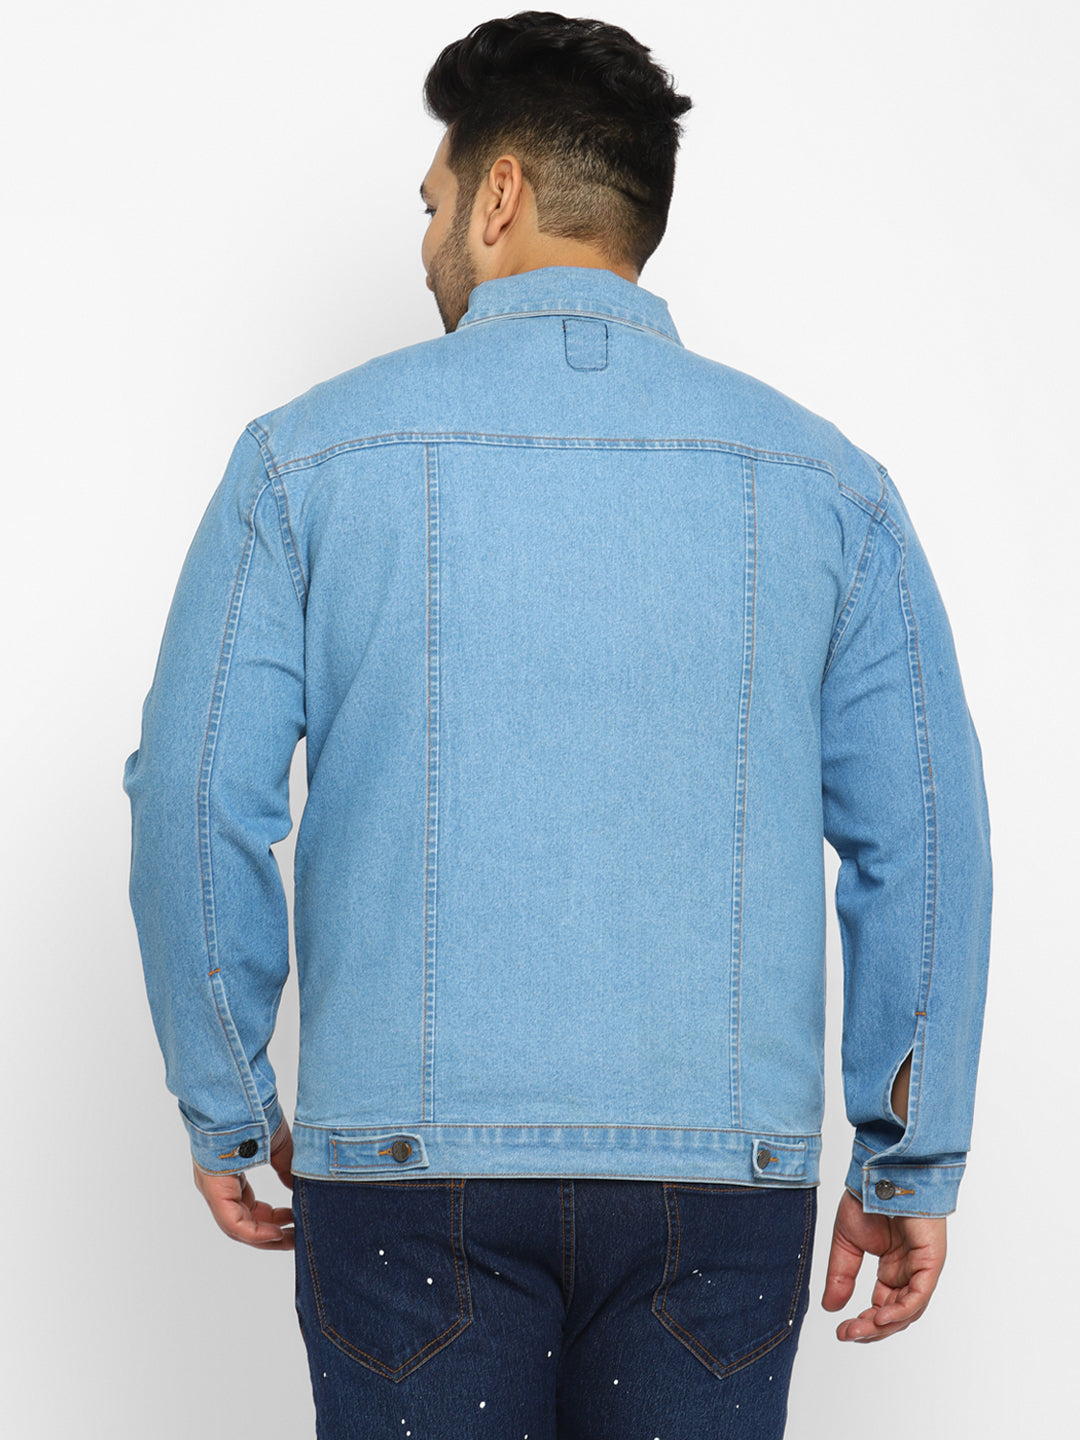 Plus Men's Light Blue Regular Fit Washed Full Sleeve Denim Jacket